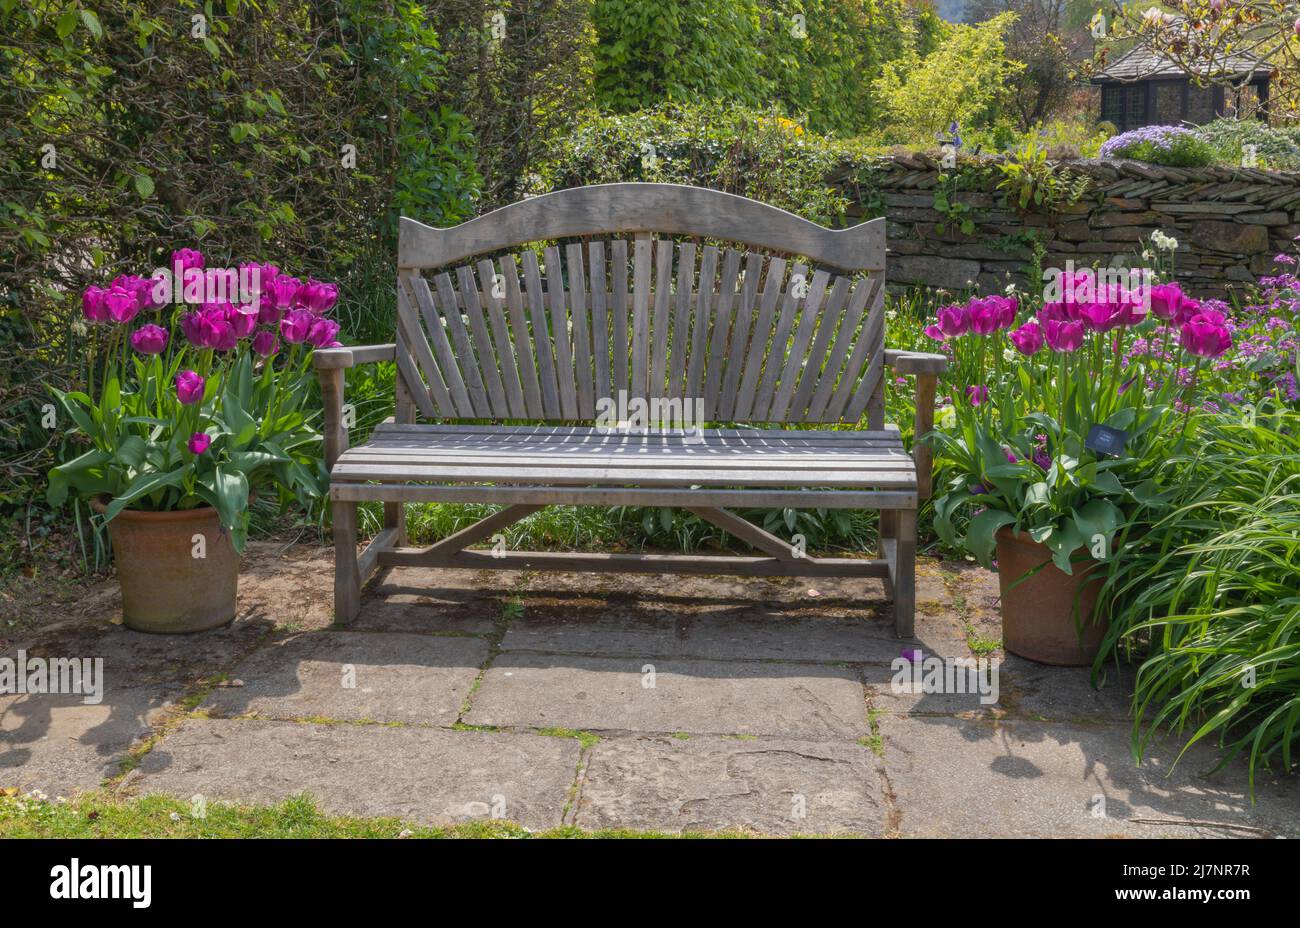 Tranquila zona de descanso situada en los jardines con tulipa negrita añadiendo color en las macetas de terracota Foto de stock